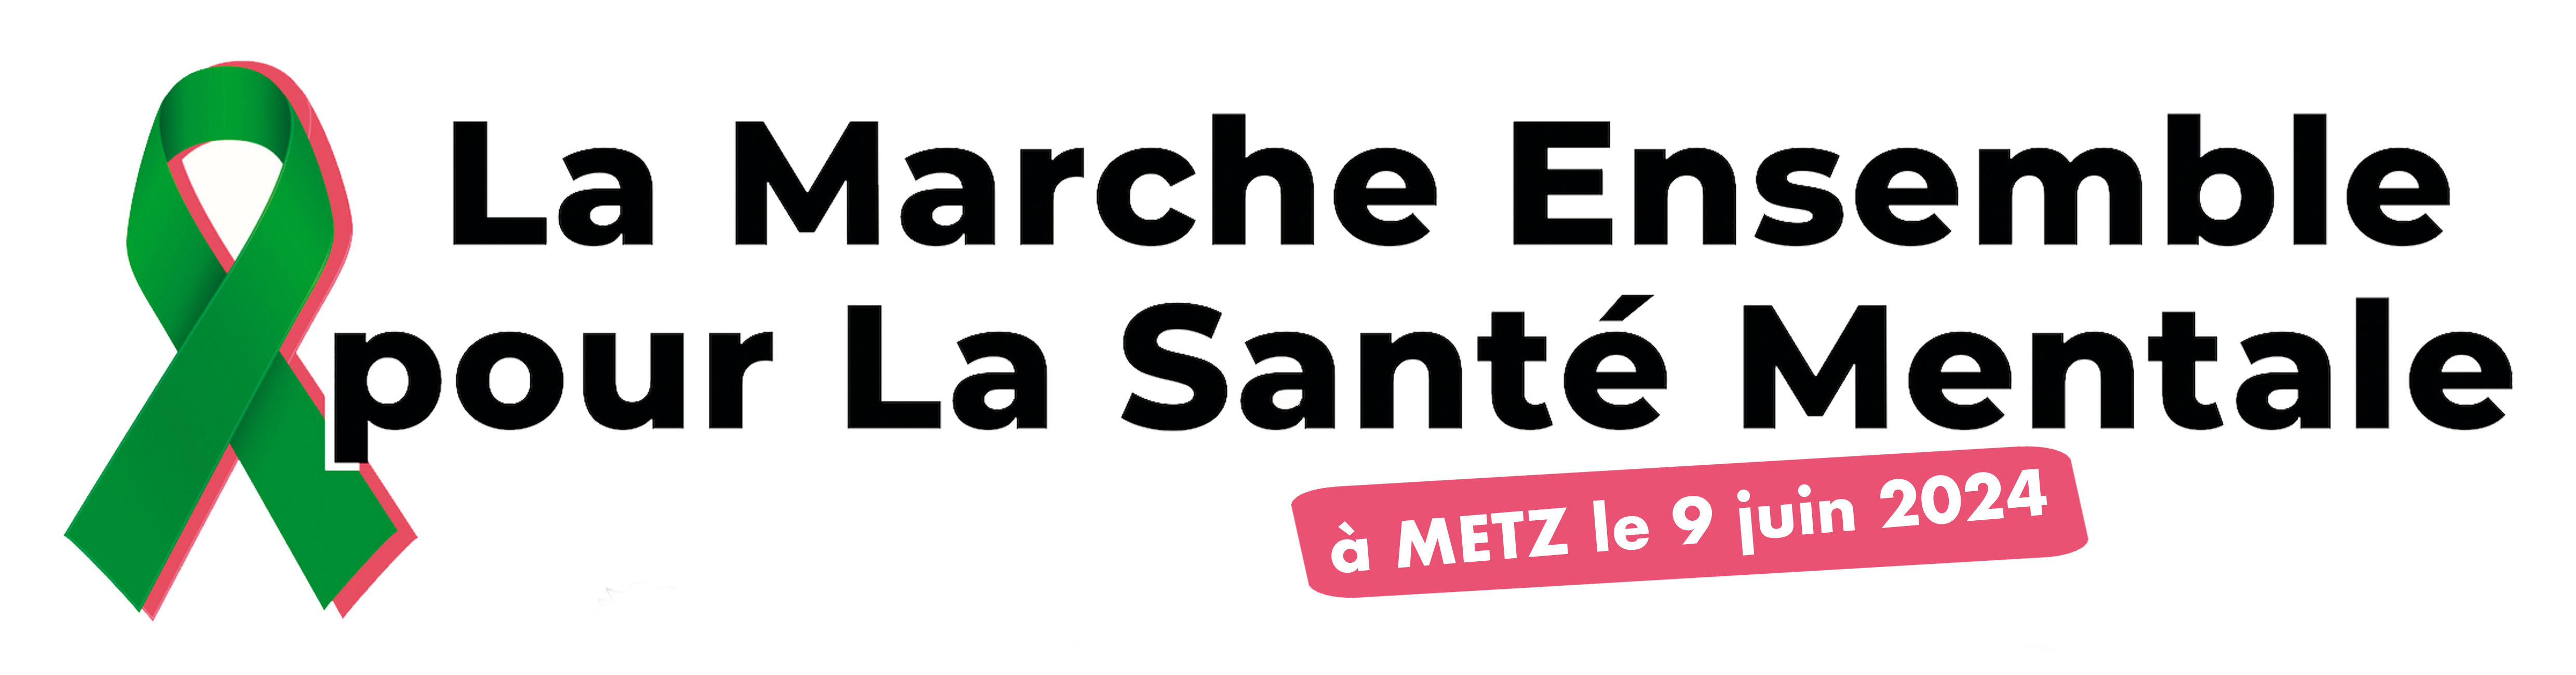 Bandeau de la Marche pour la santé mentale à Metz le 9 juin 2024